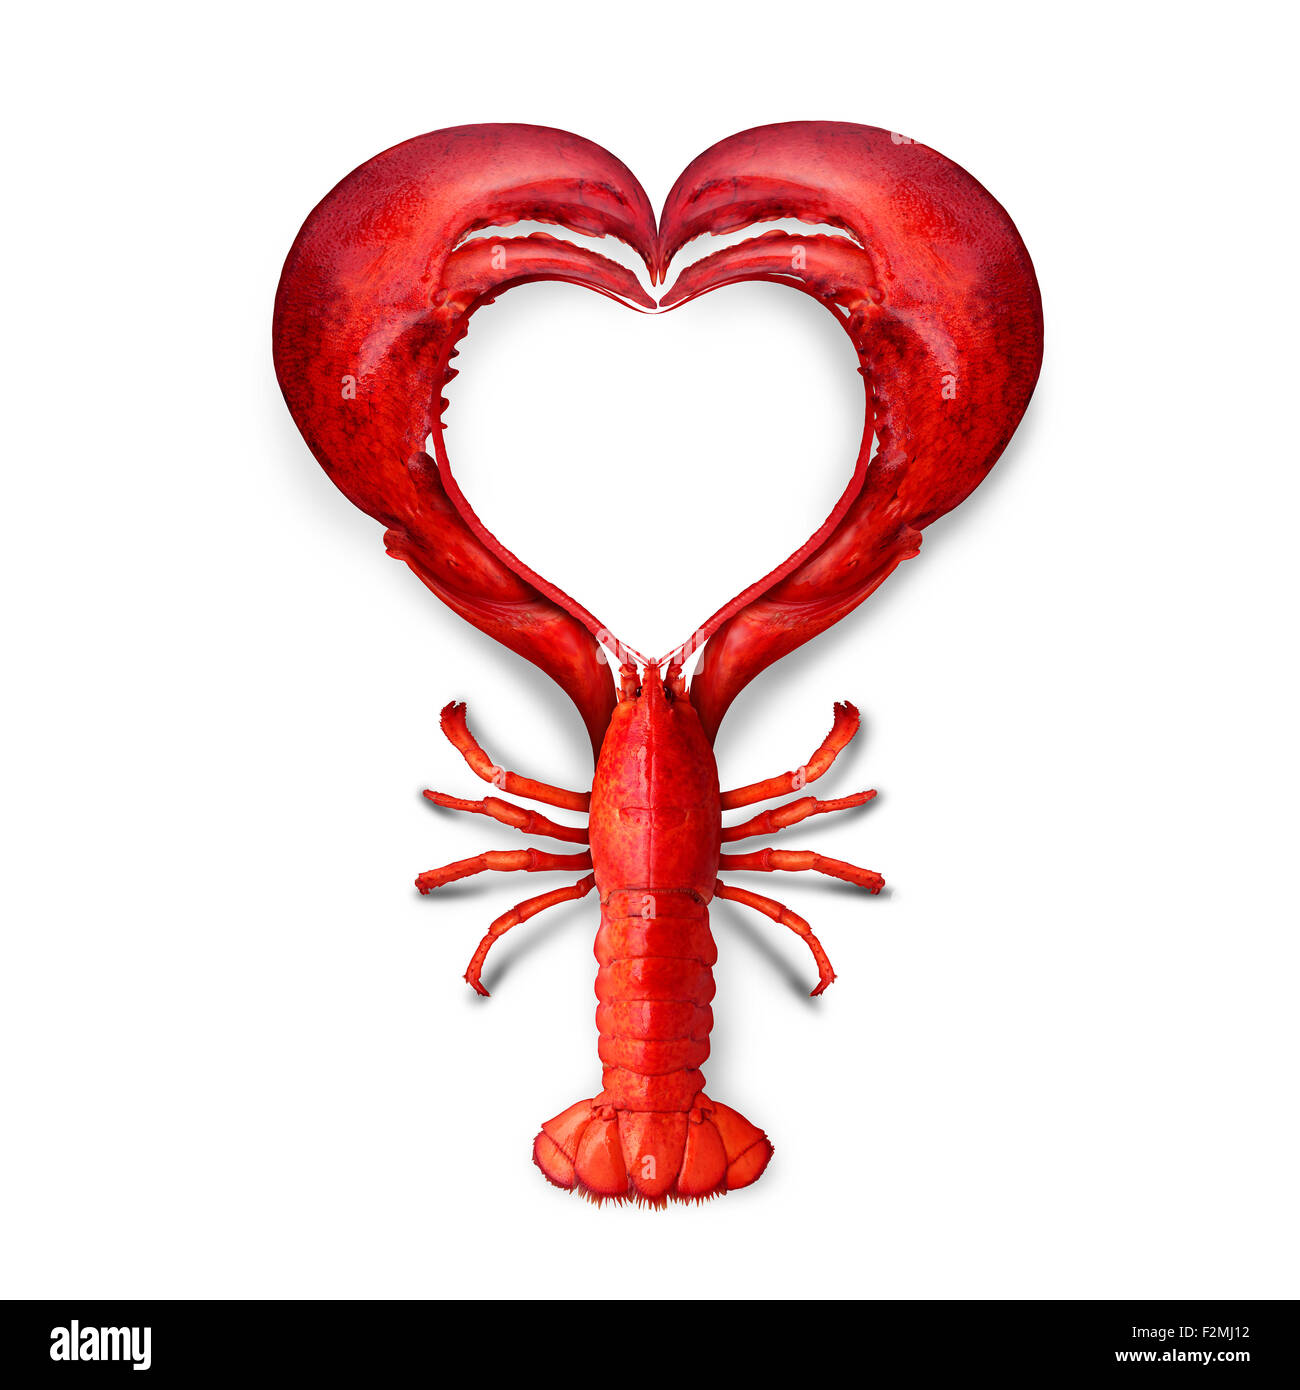 L'amour comme un concept de fruits de mer homard bouilli comme un symbole en forme de cœur comme une métaphore des fruits de mer frais de l'océan ou la promotion d'un dîner de poissons ou de commercialisation d'un menu de restaurant. Banque D'Images